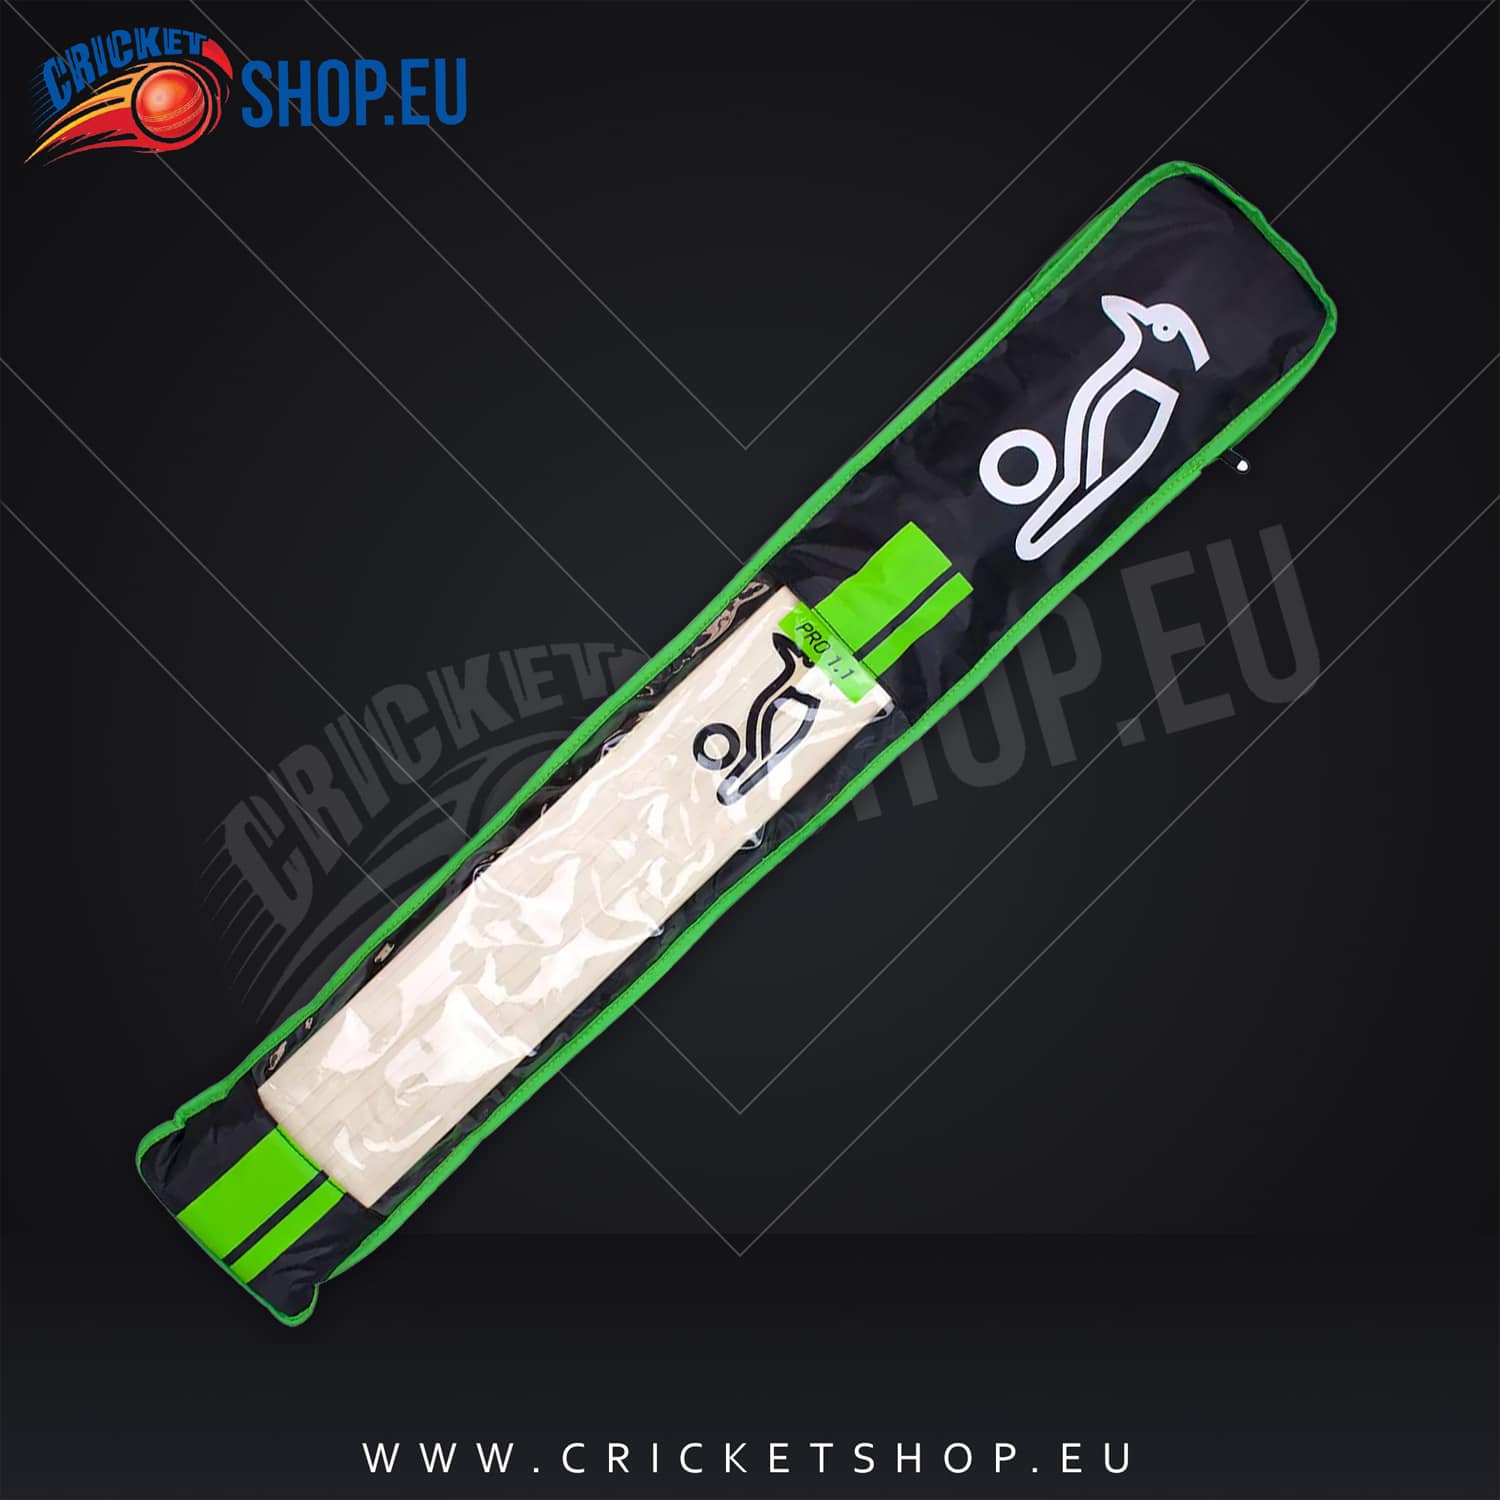 Kookaburra Pro 1.1 Cricket Bat Cover